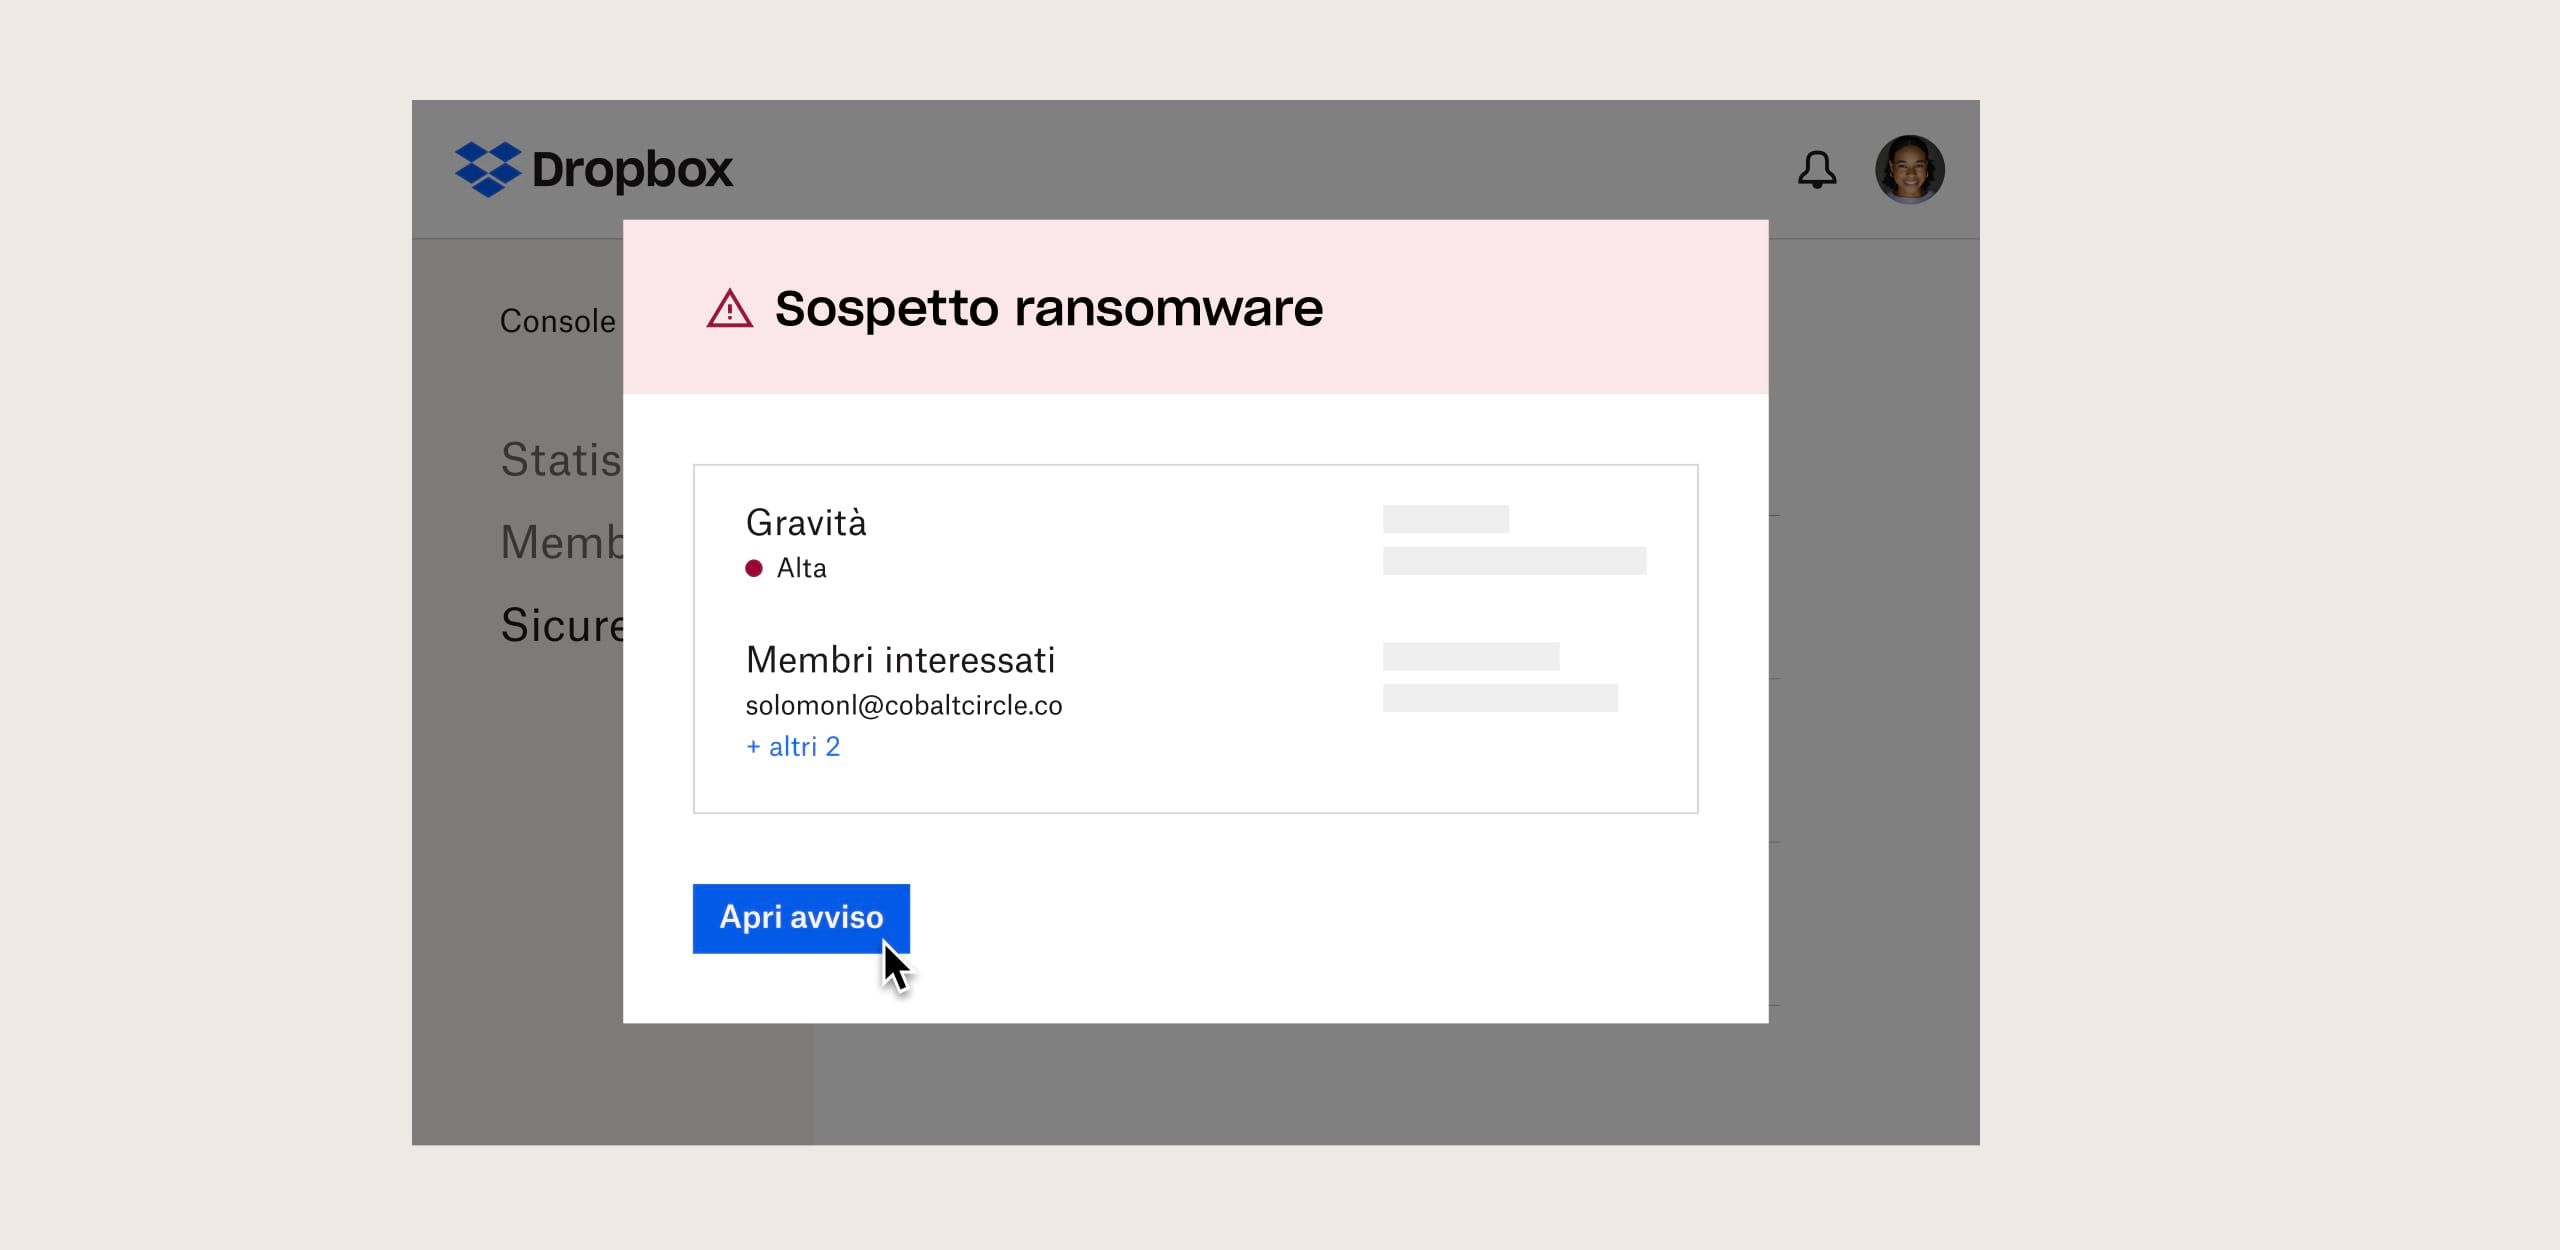 Un utente visualizza un messaggio di sicurezza relativo a un sospetto ransomware in Dropbox